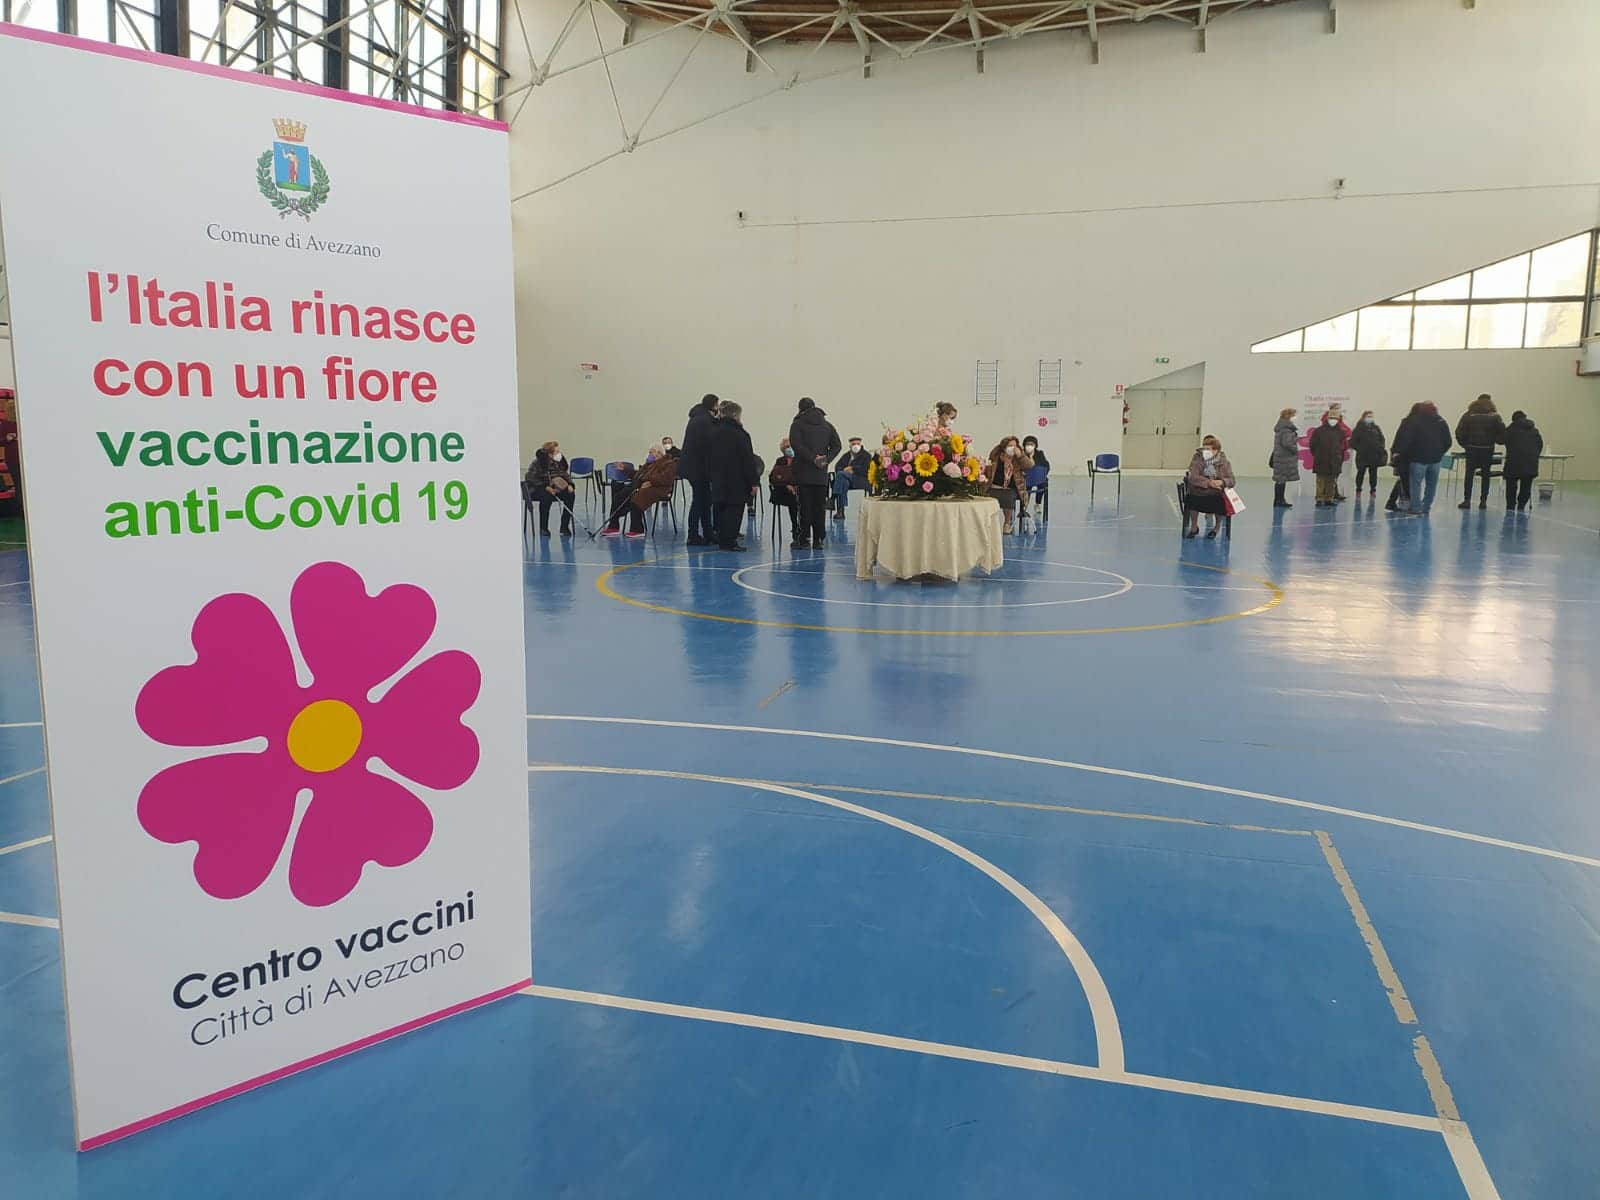 Inaugurata oggi la nuova sede vaccinale ad Avezzano. Obiettivo: 800 somministrazioni al giorno